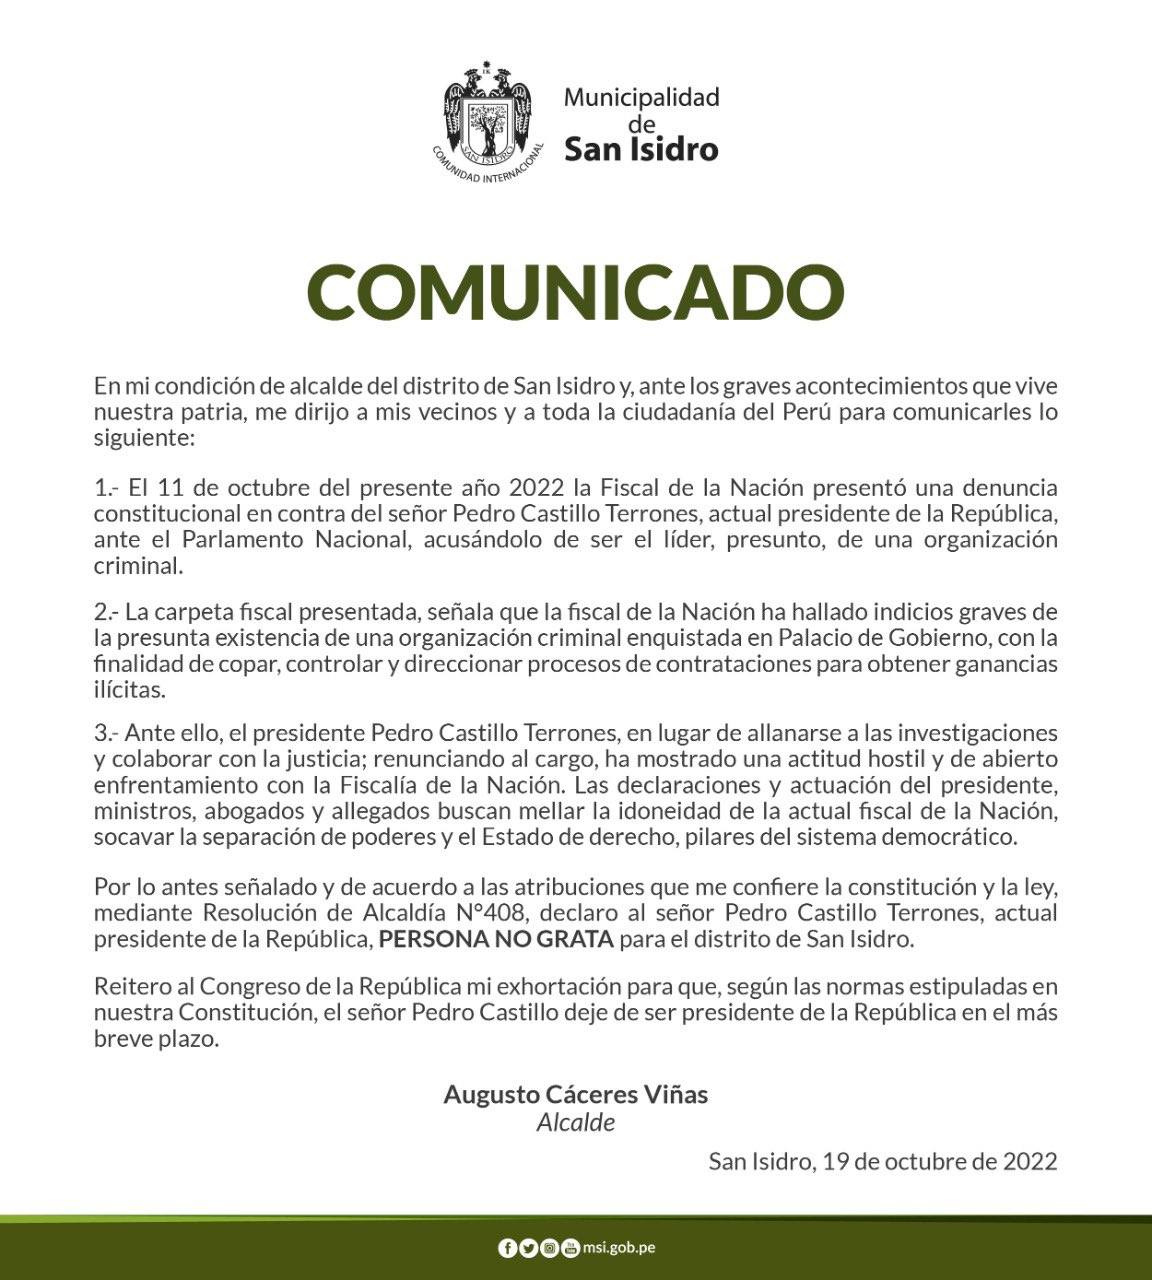 Curiosamente, el 19 de octubre de 2022, el burgomaestre Augusto Cáceres declaró al presidente Pedro Castillo como persona no grata para el distrito de San Isidro.